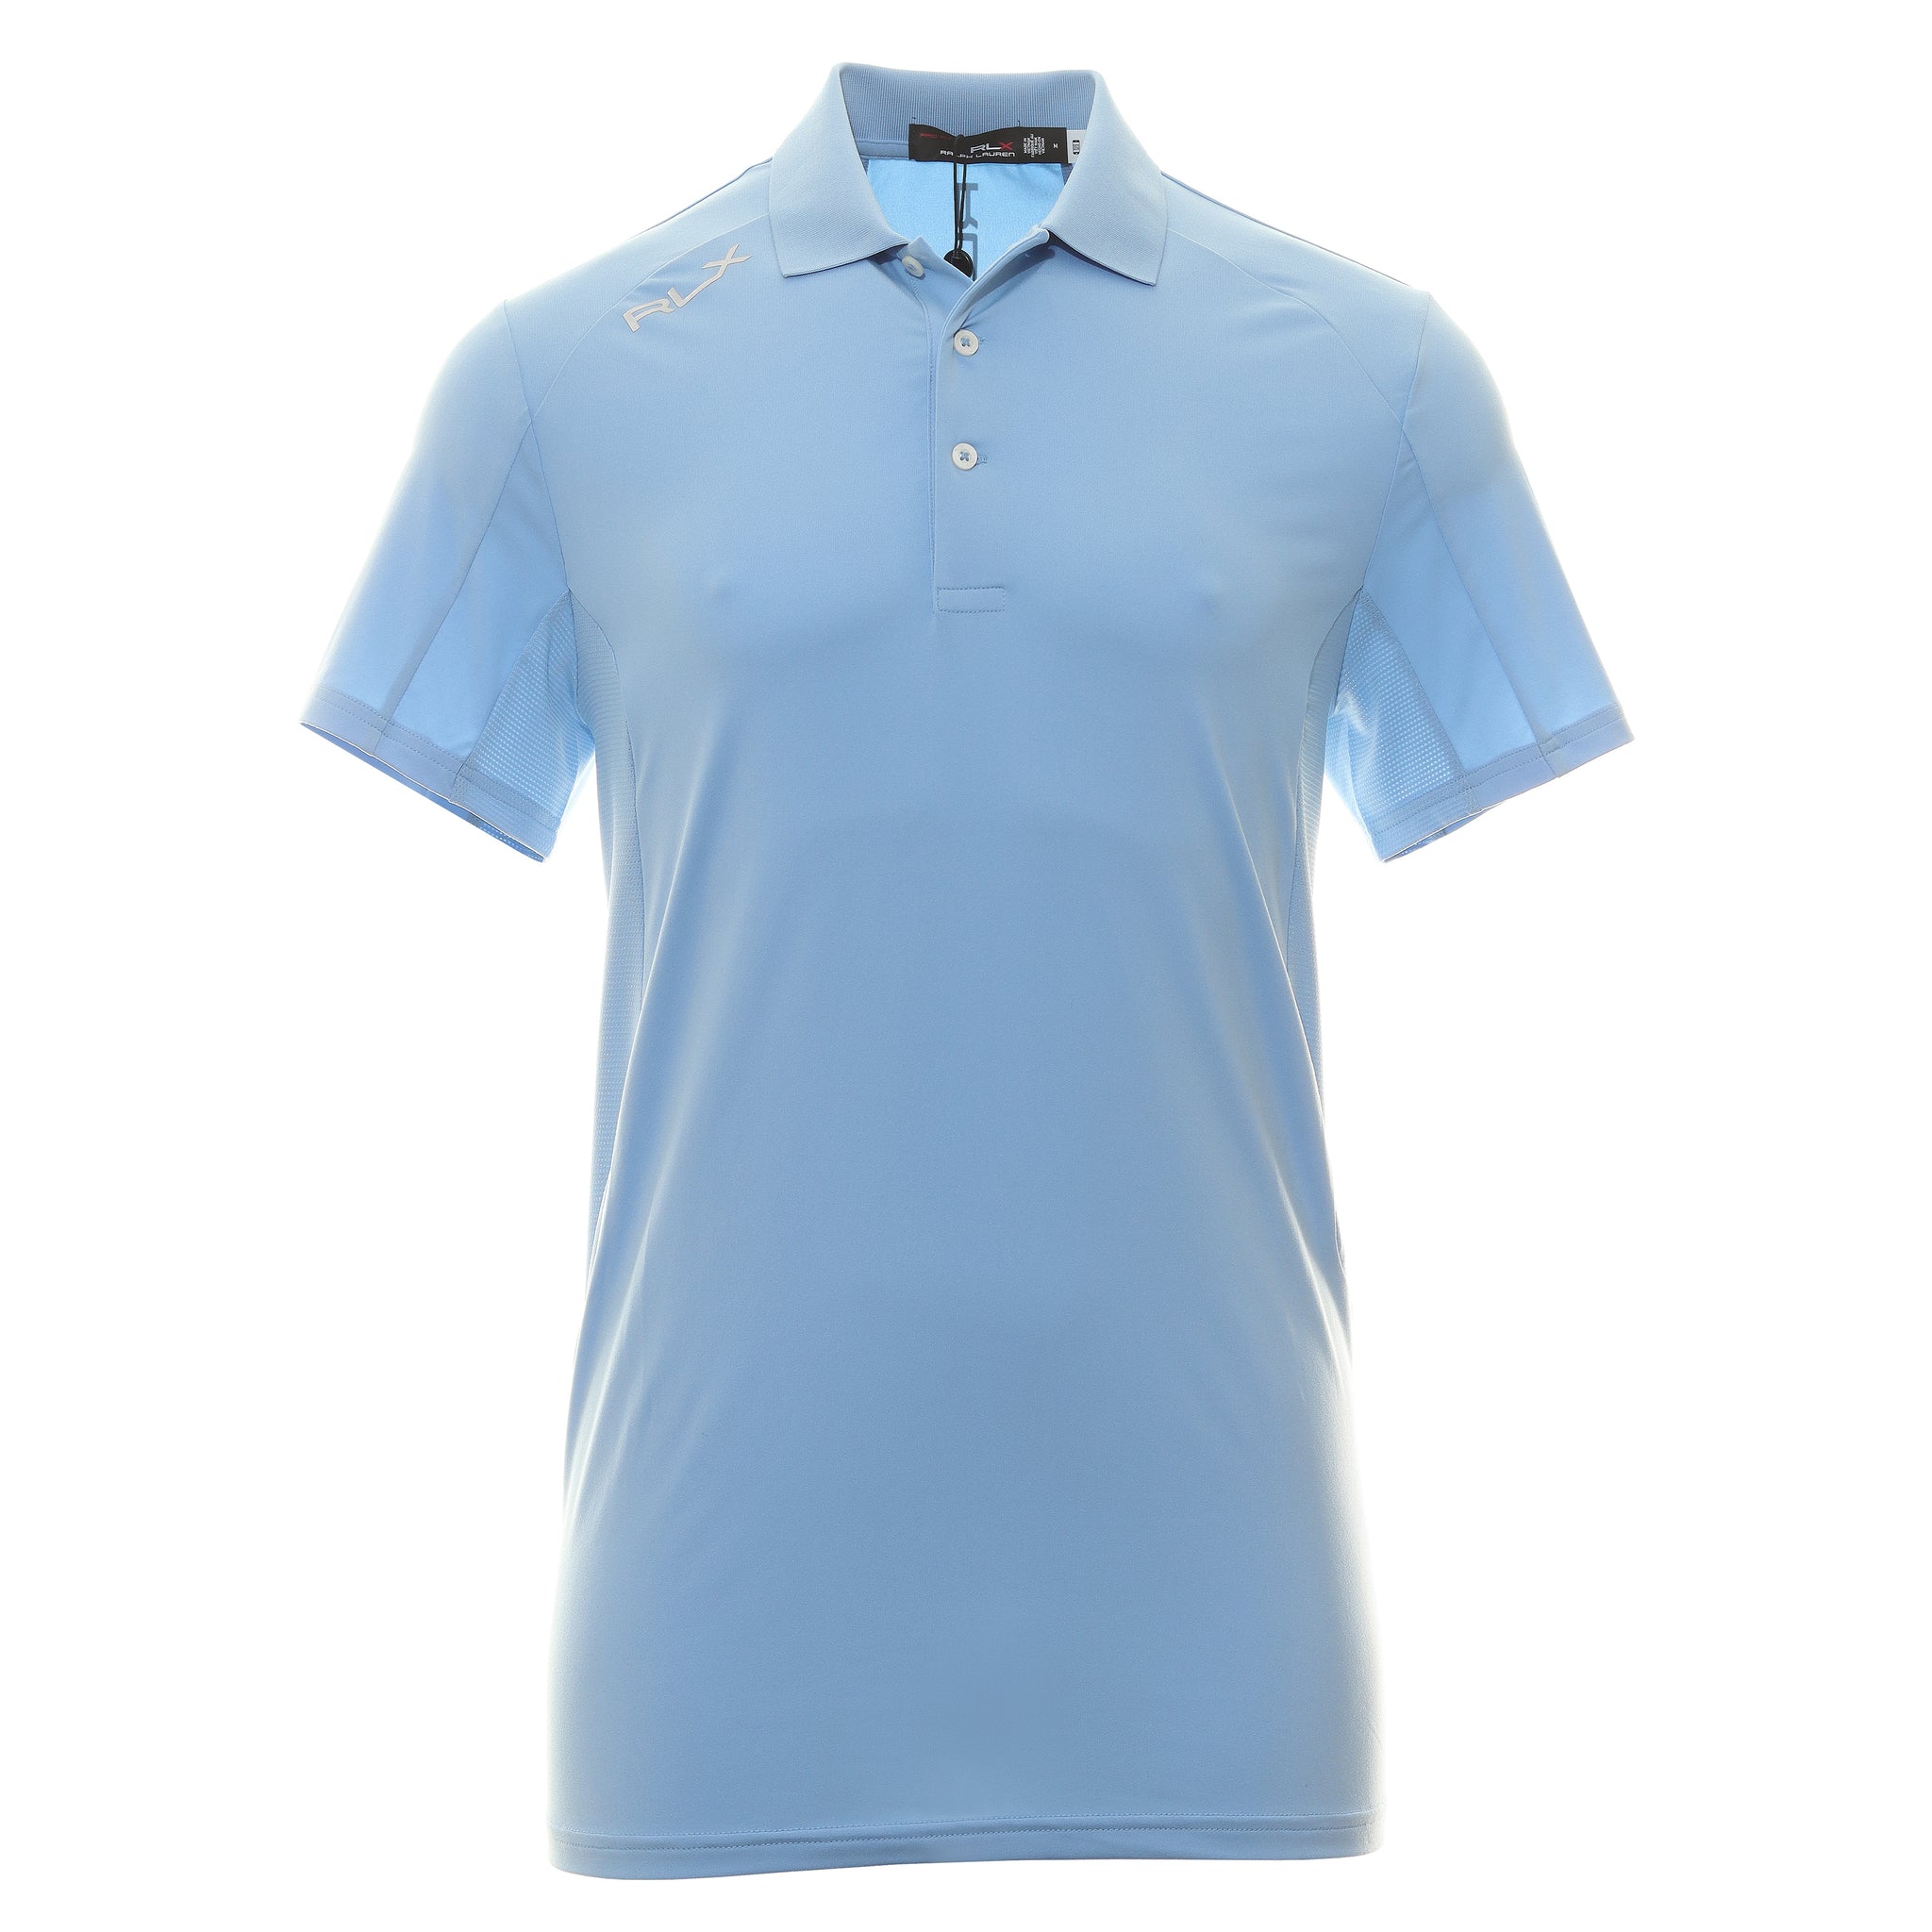 rlx-ralph-lauren-airflow-jersey-polo-shirt-785899228-blue-lagoon-006